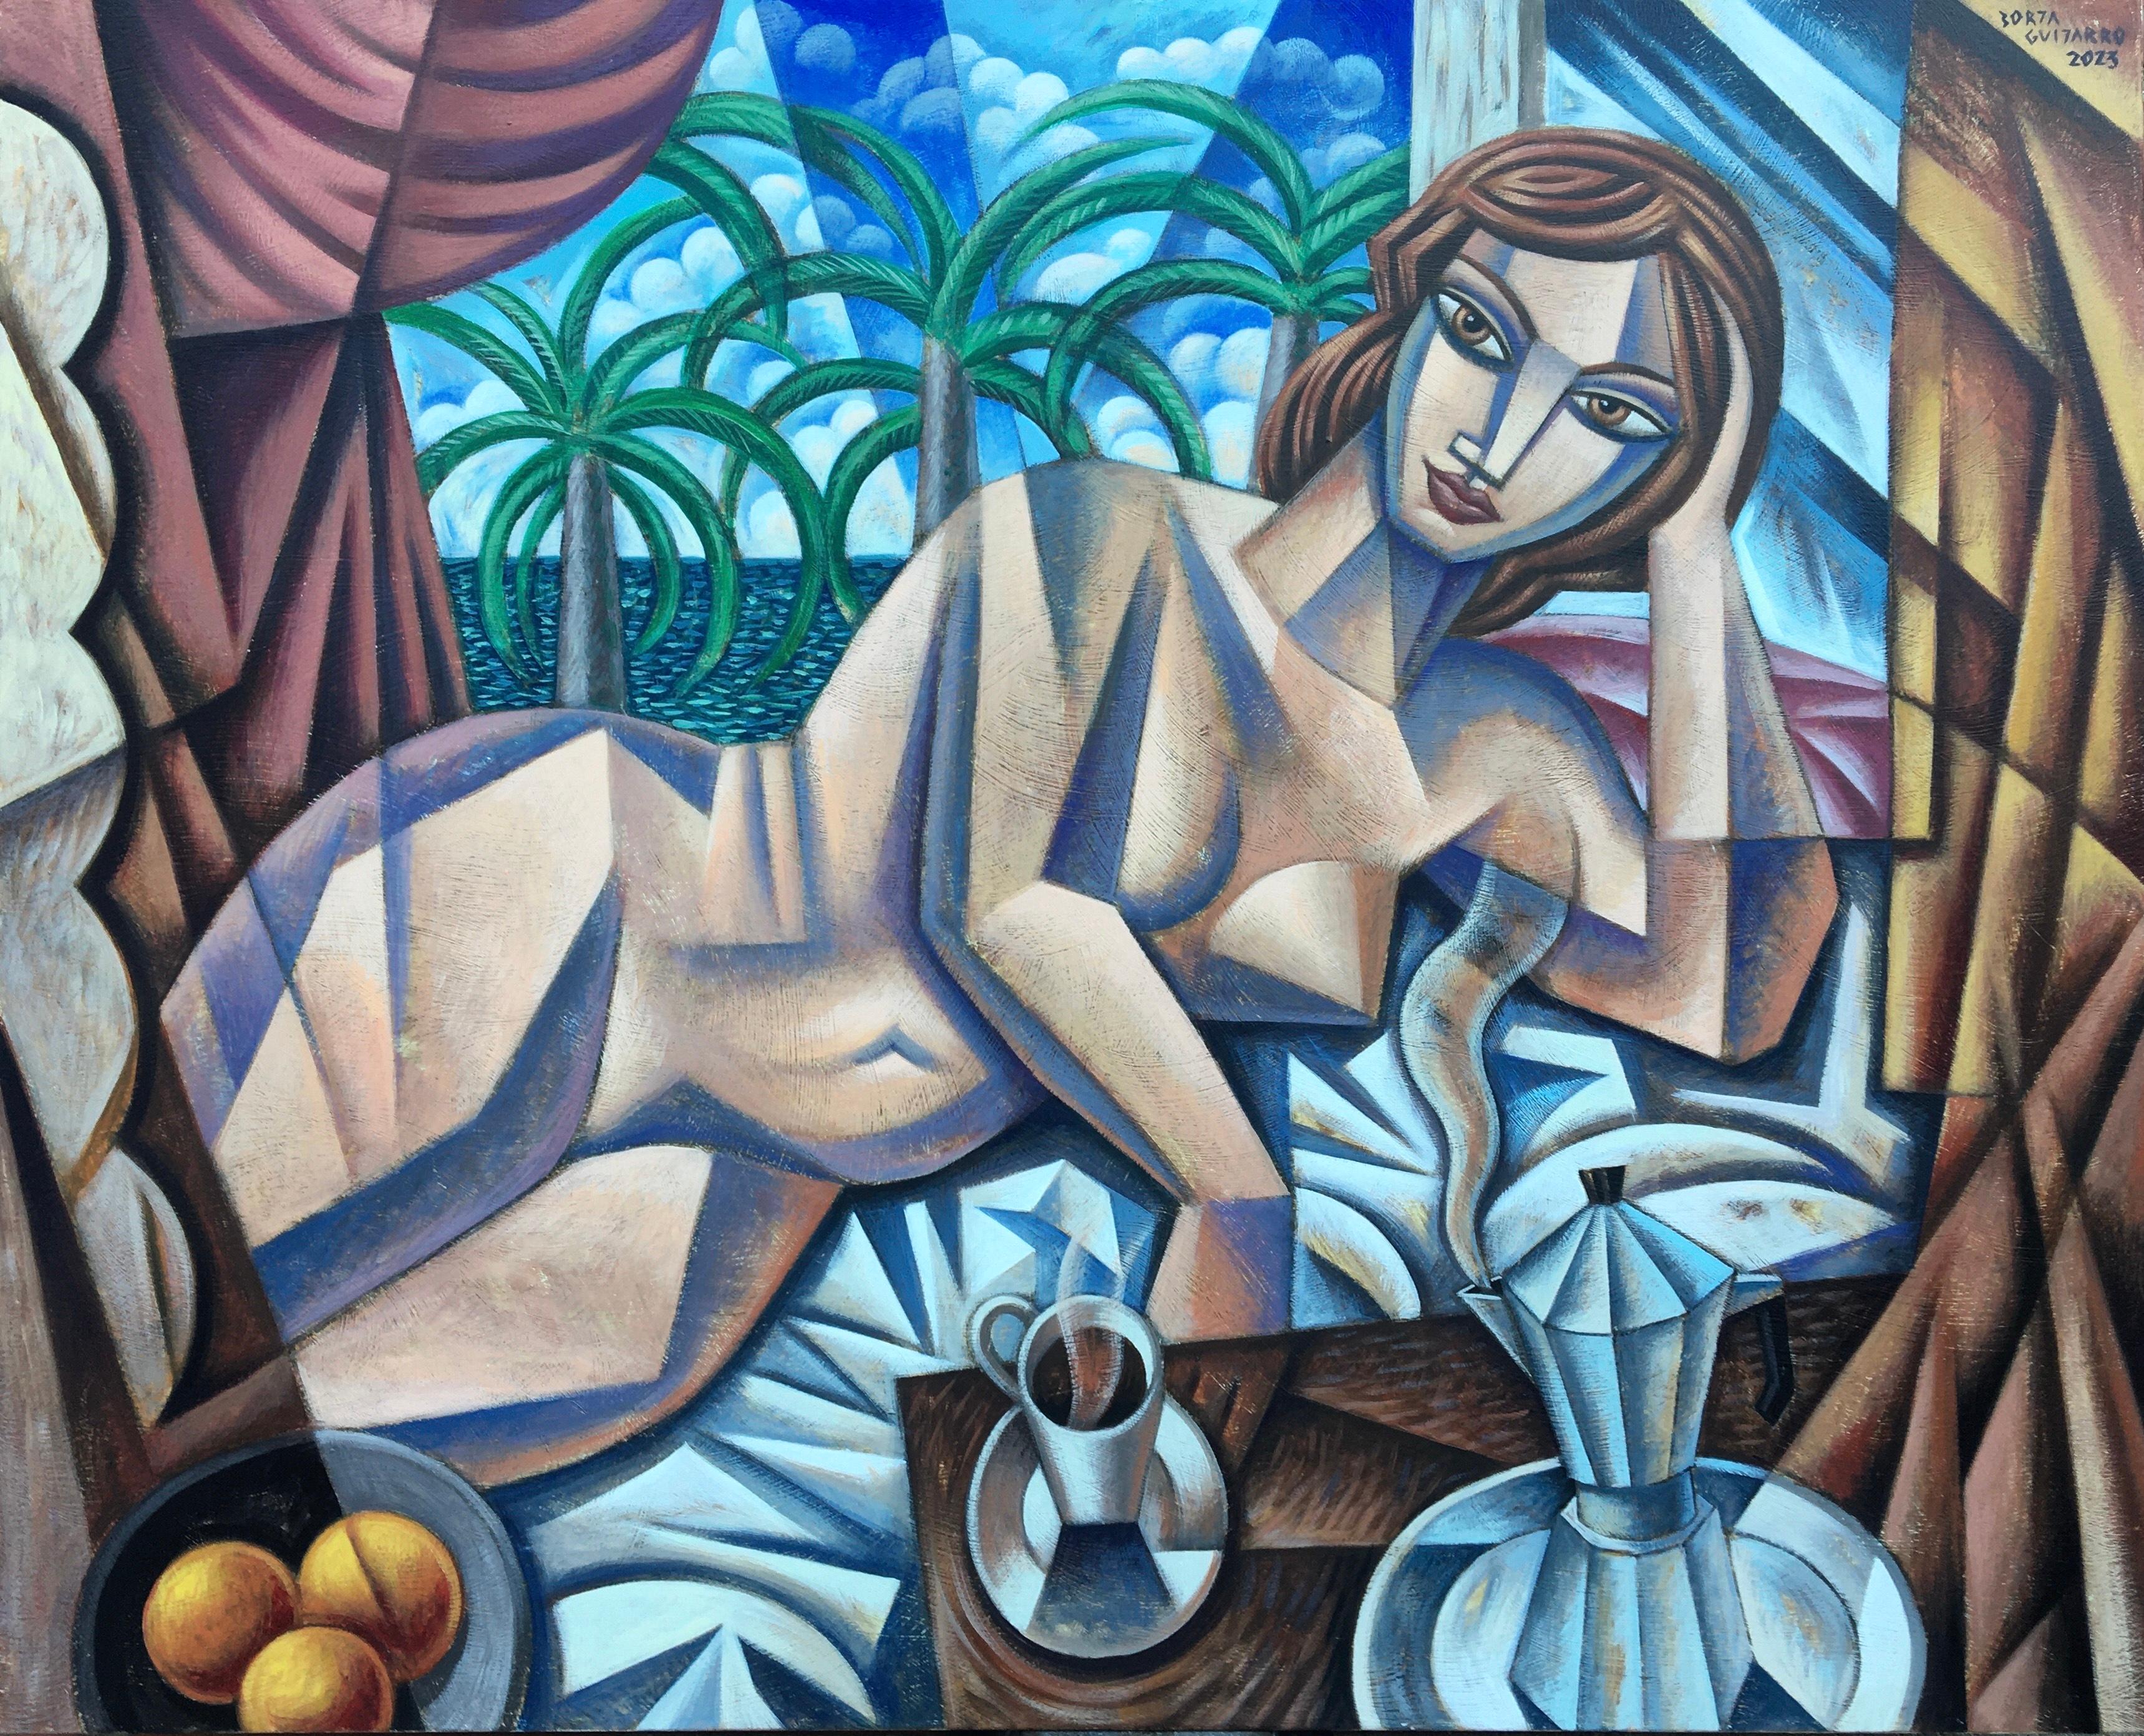 Akt mit Kaffee-originaler Kubismus figurativ-Stillleben-Gemälde-Zeitgenössische Kunst